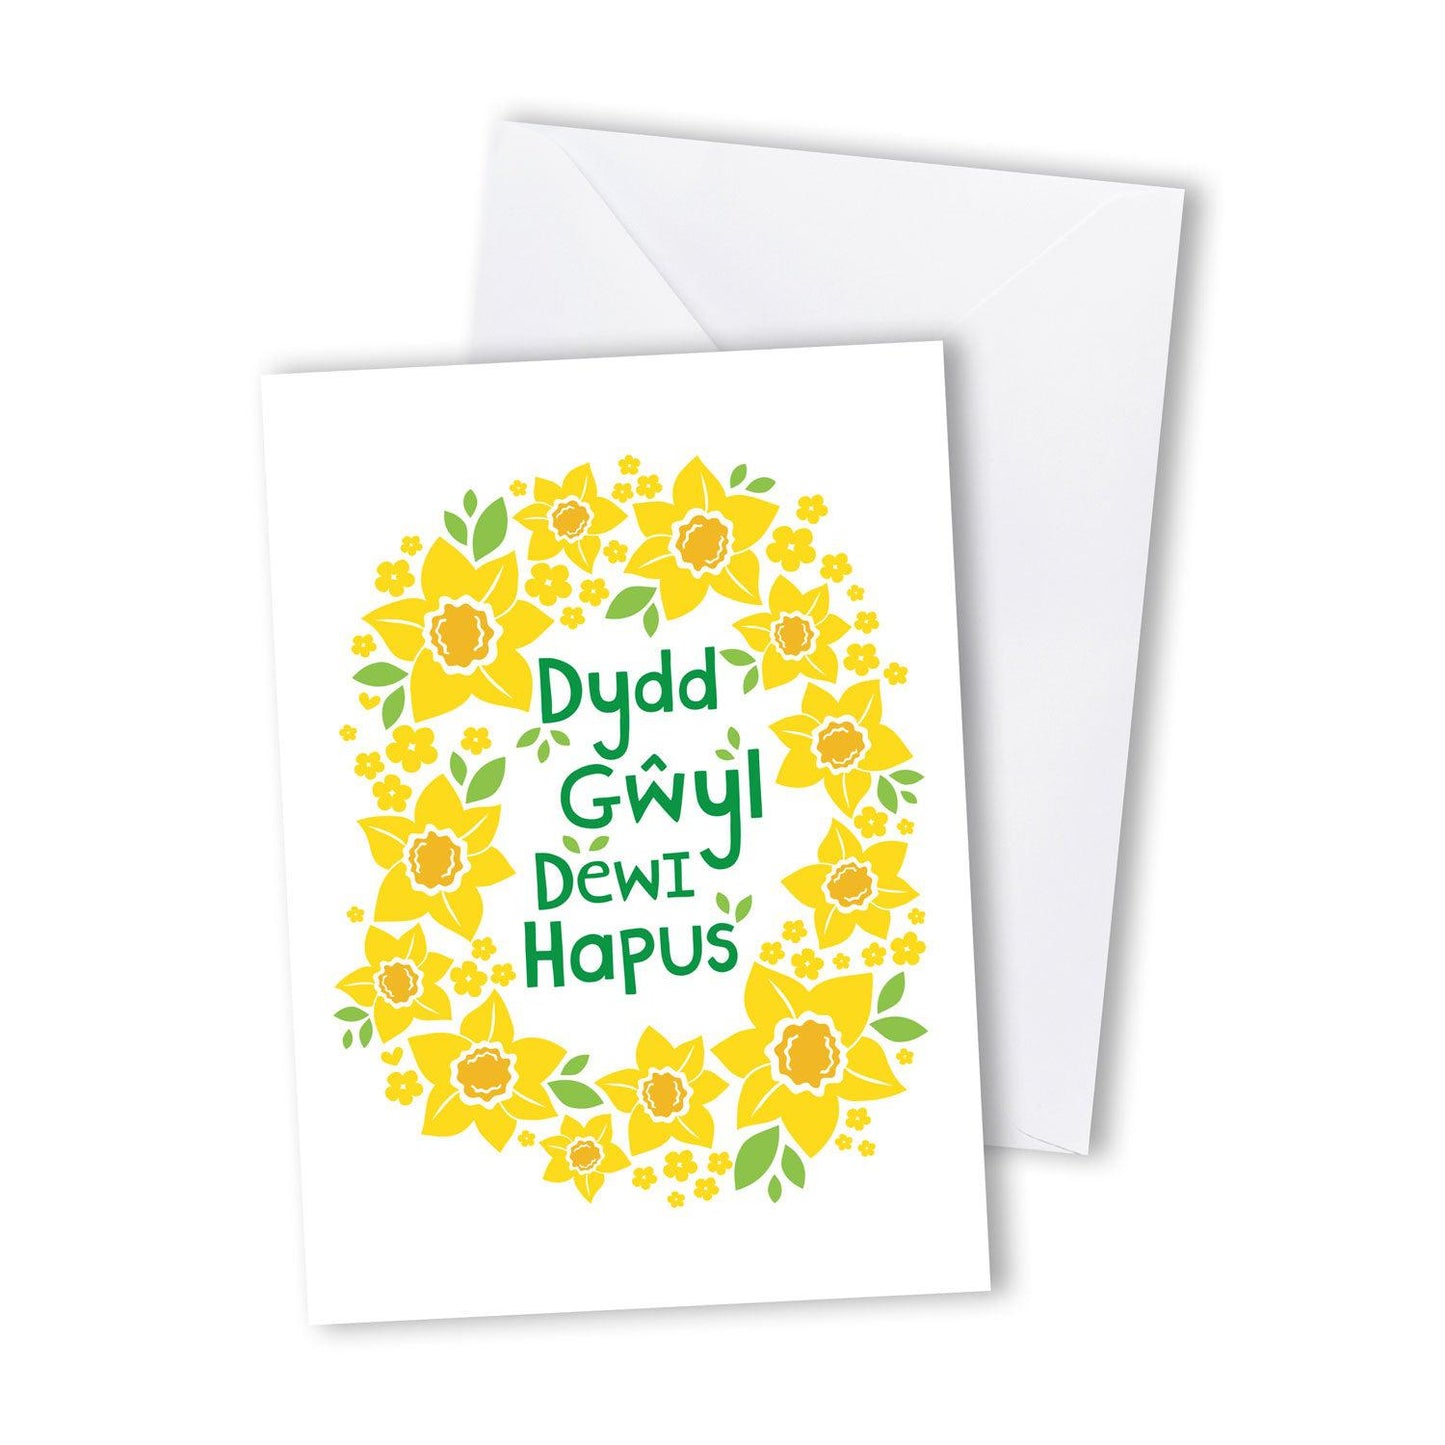 Card Happy St. David's Day / Dydd Gwyl Dewi Hapus